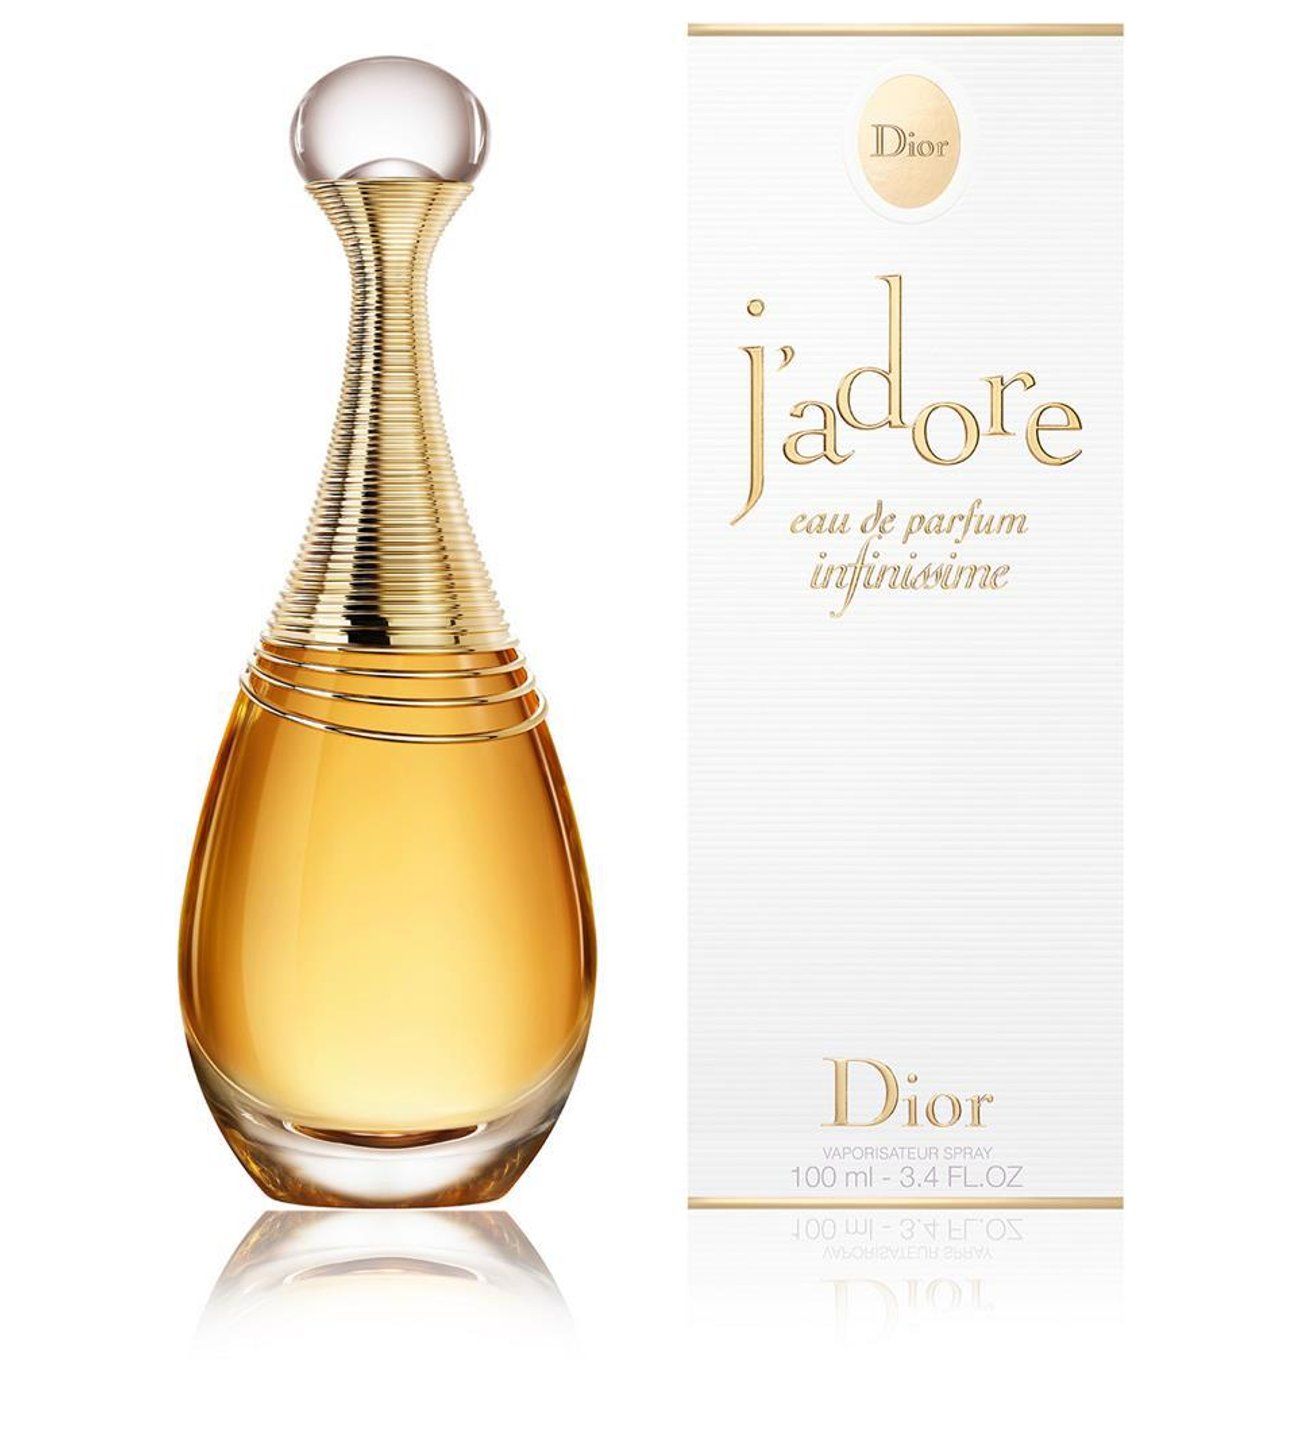 Духи жадор оригинал. Christian Dior "j'adore EDP" 50 ml. Диор жадор 100 мл. Christian Dior Jadore EDP, 100ml. Dior Jadore парфюмерная вода 100 мл.